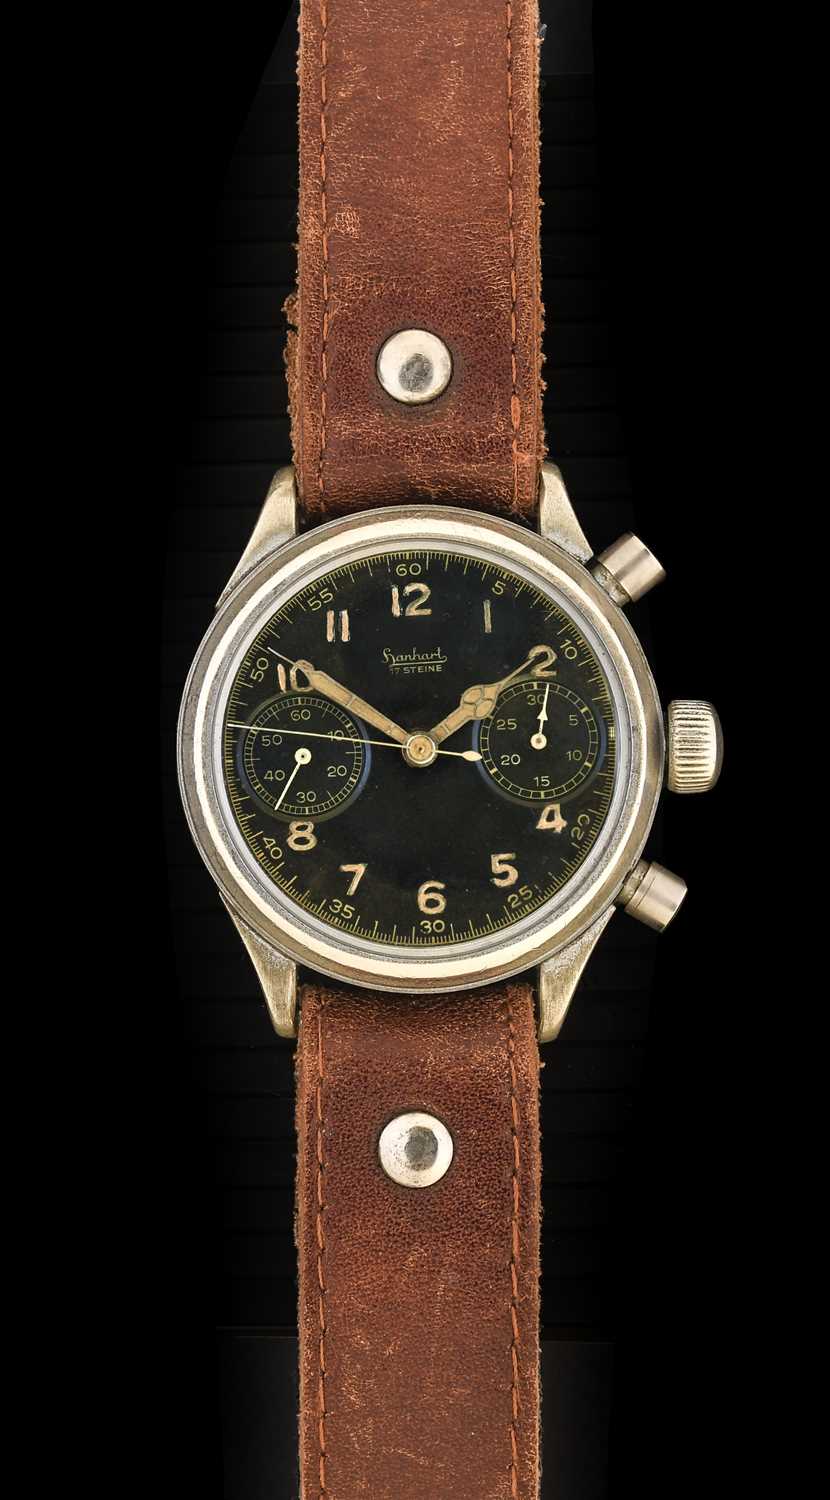 Hanhart: A Rare Second World War German Luftwaffe Pilots Chronograph Wristwatch, signed Hanhart,